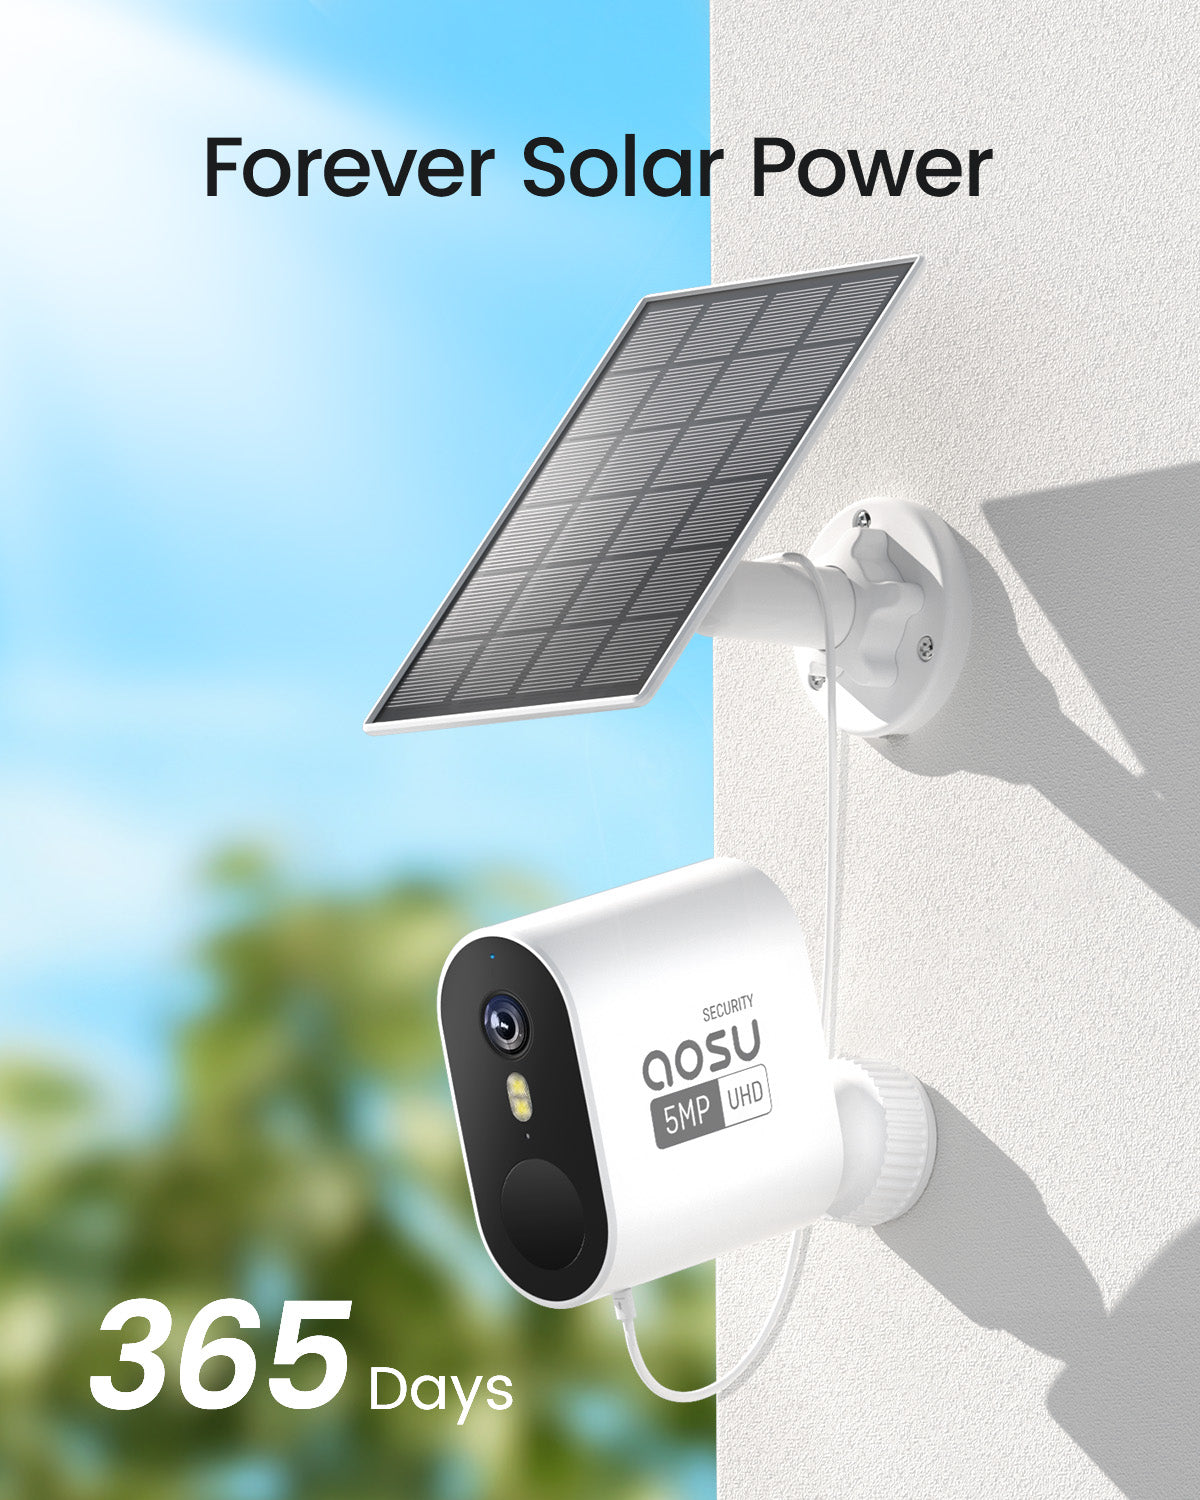 forever solar power